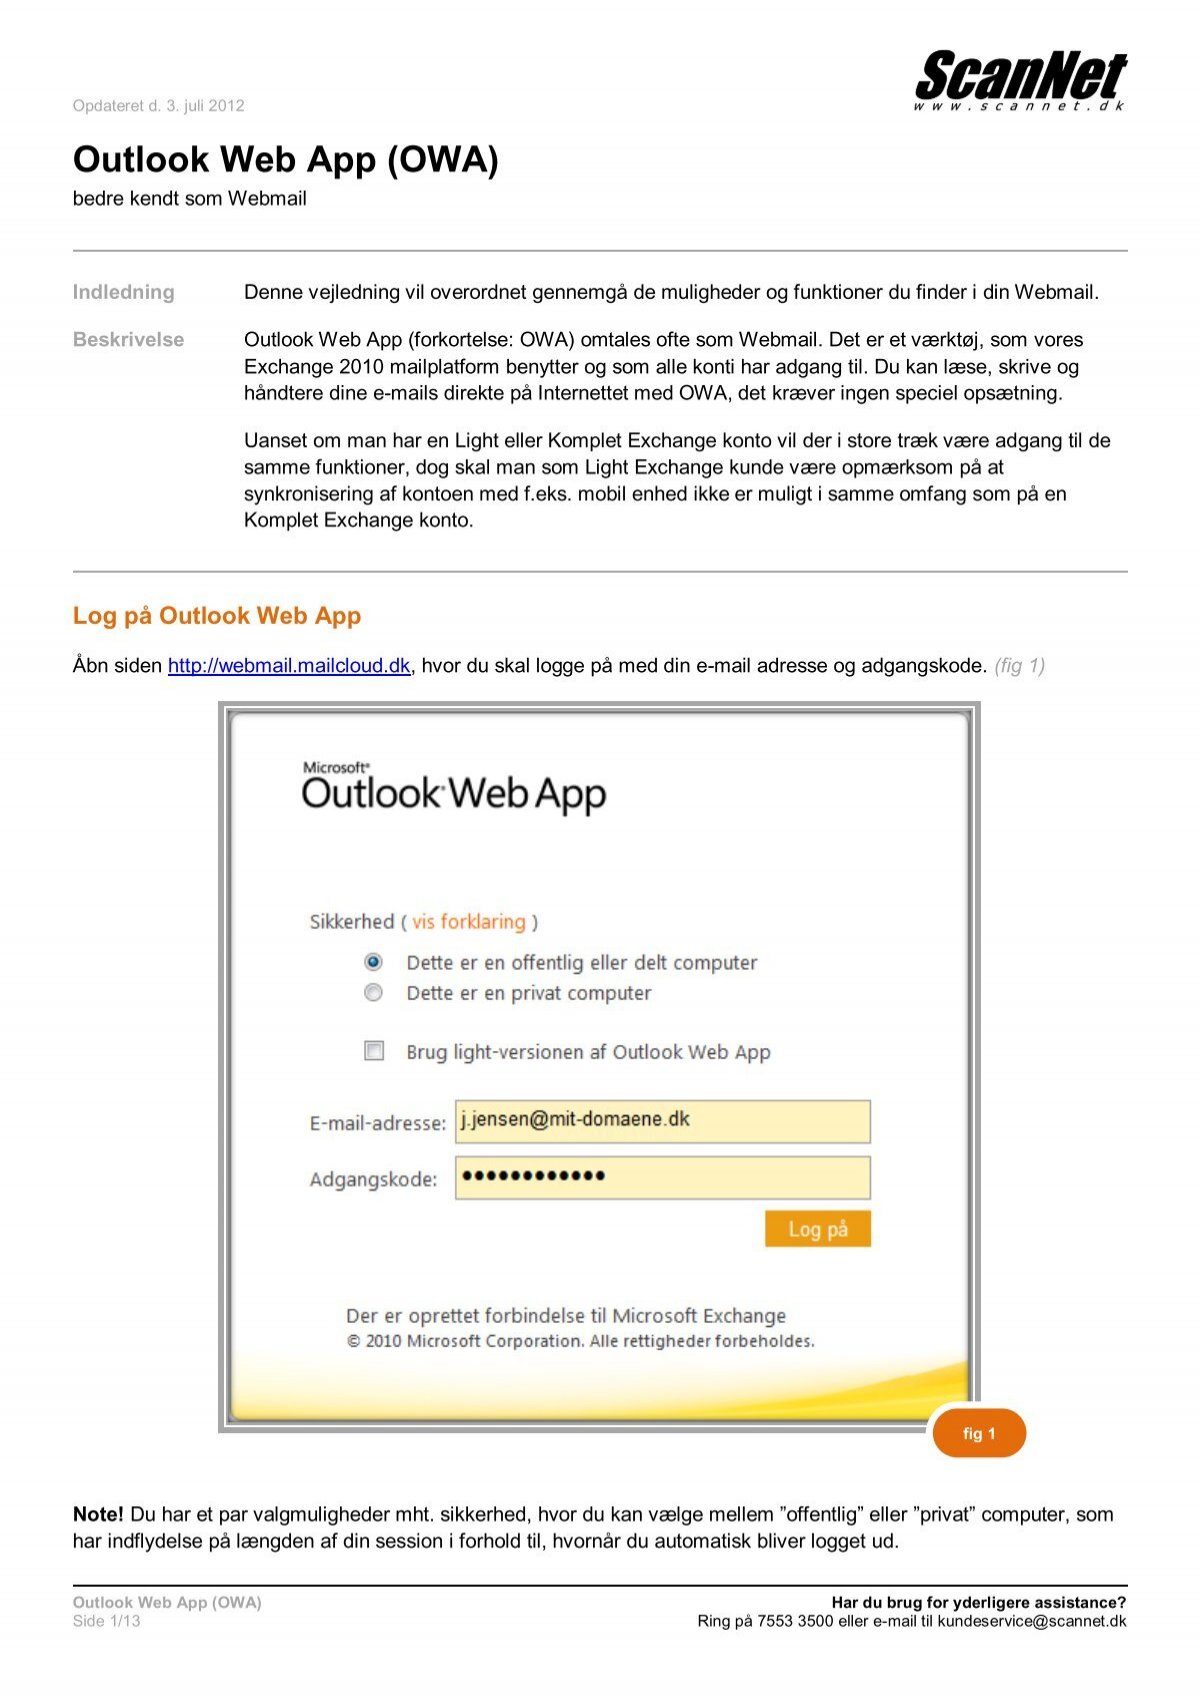 ScanNet - Outlook Web App